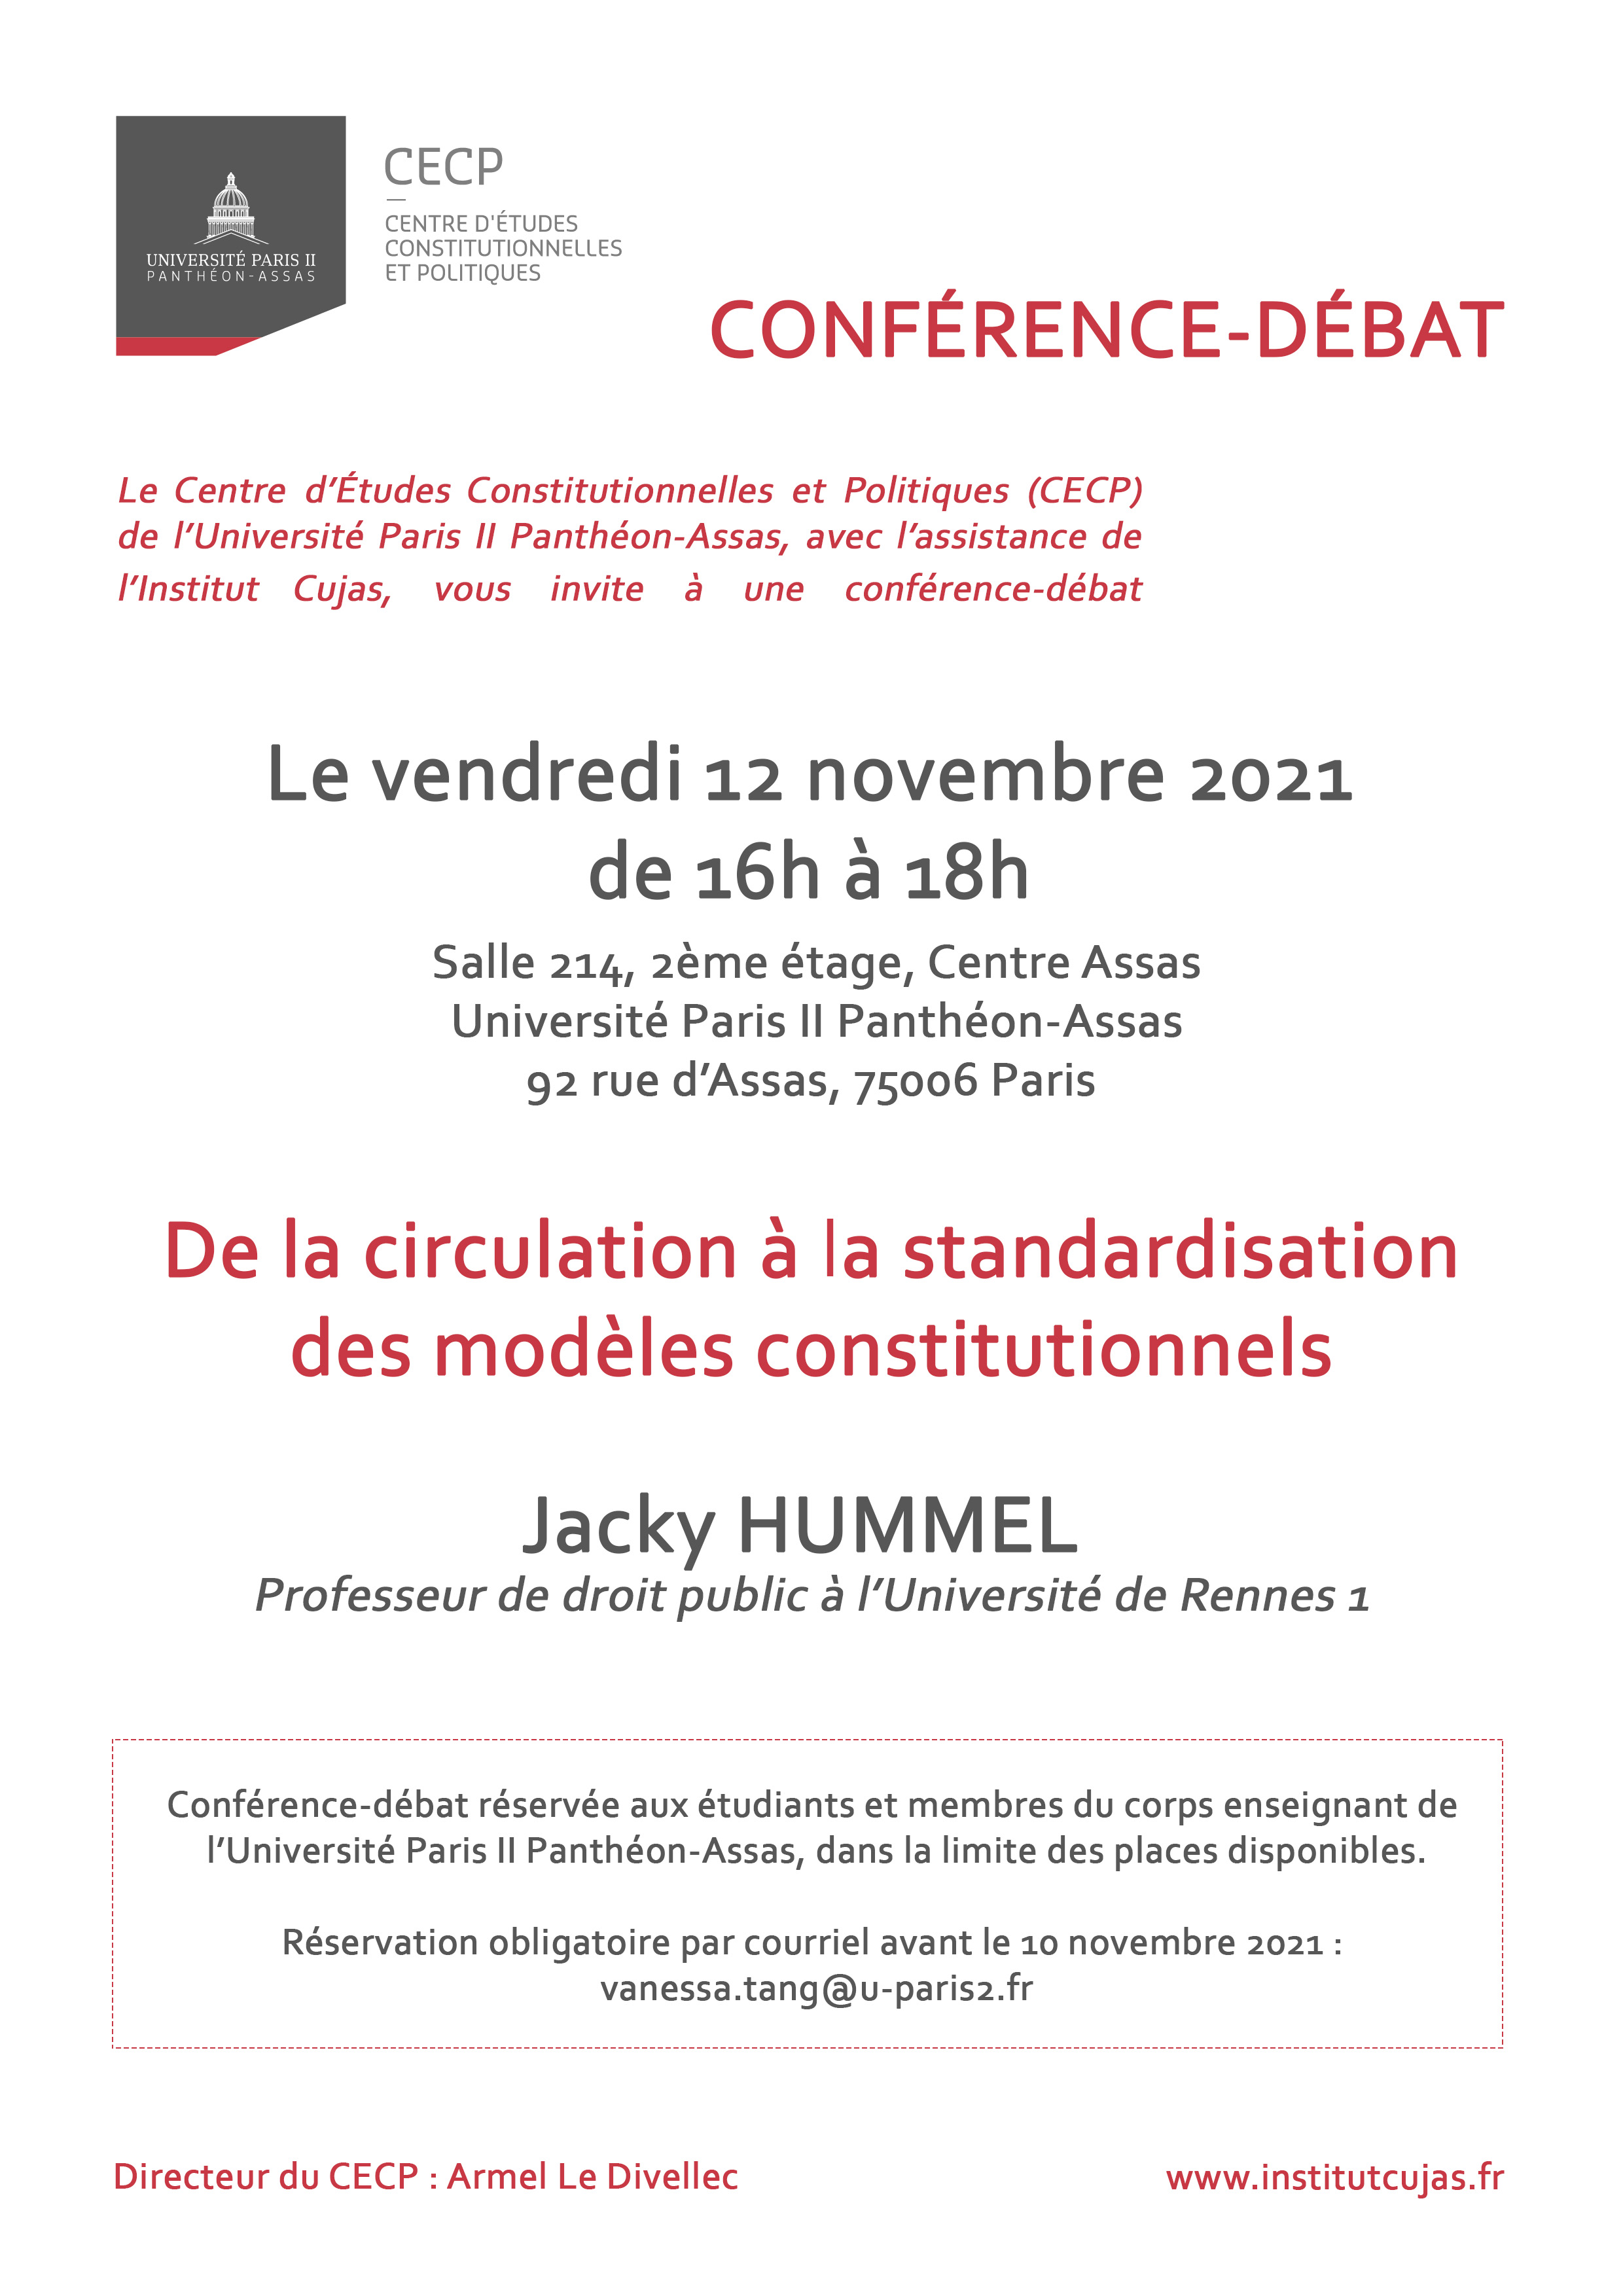 cecp_-_conference-debat_du_12_novembre_2021